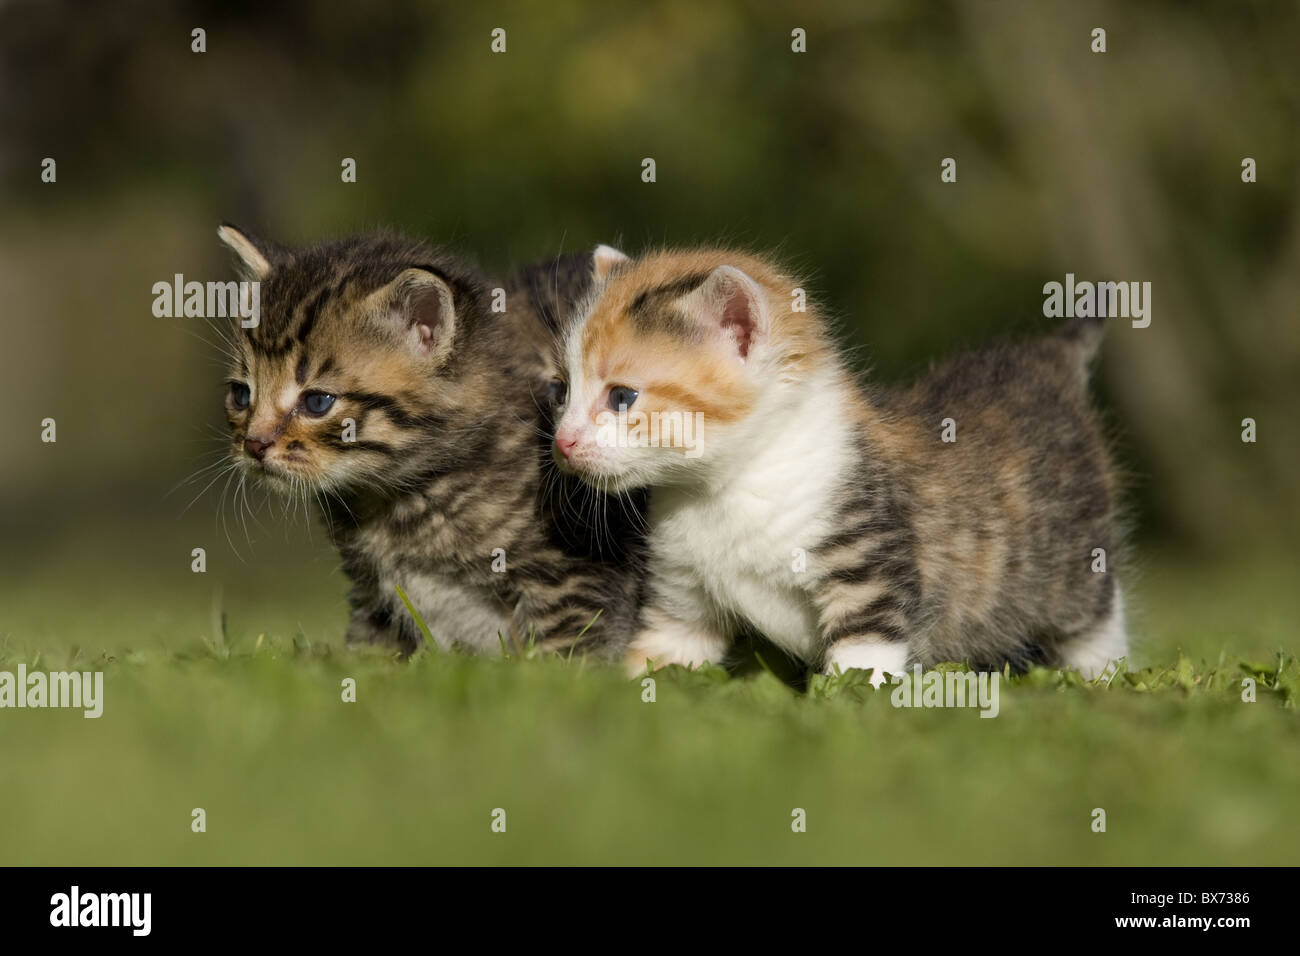 zwei kaetzchen auf Wiese, two kitten on a meadow Stock Photo